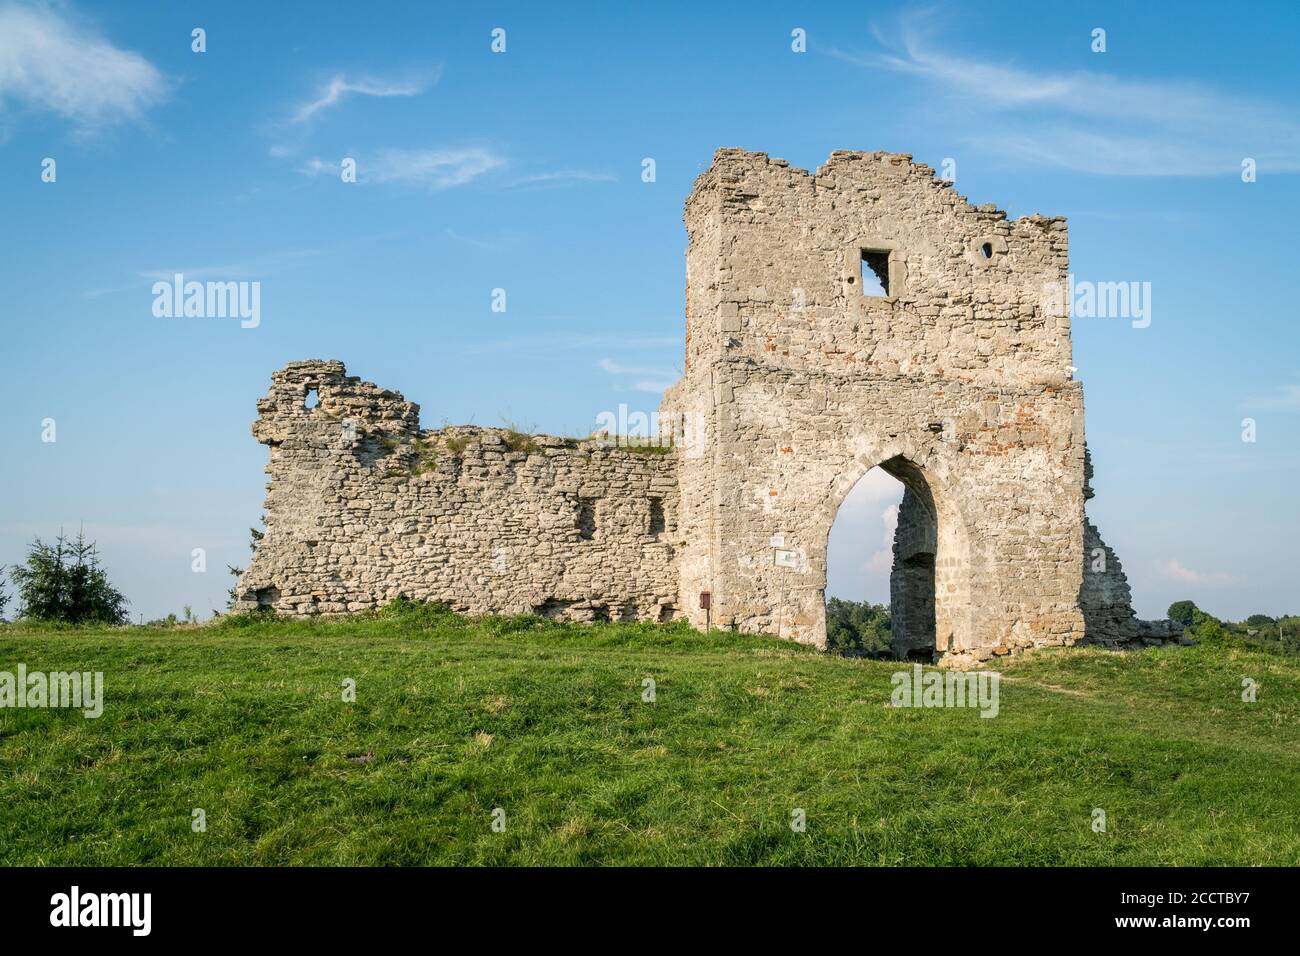 Ruines du château de Kremenets situé au sommet d'une colline dans la ville de Kremenets, région de Ternopil, Ukraine. Destinations de voyage et architecture historique à UKR Banque D'Images